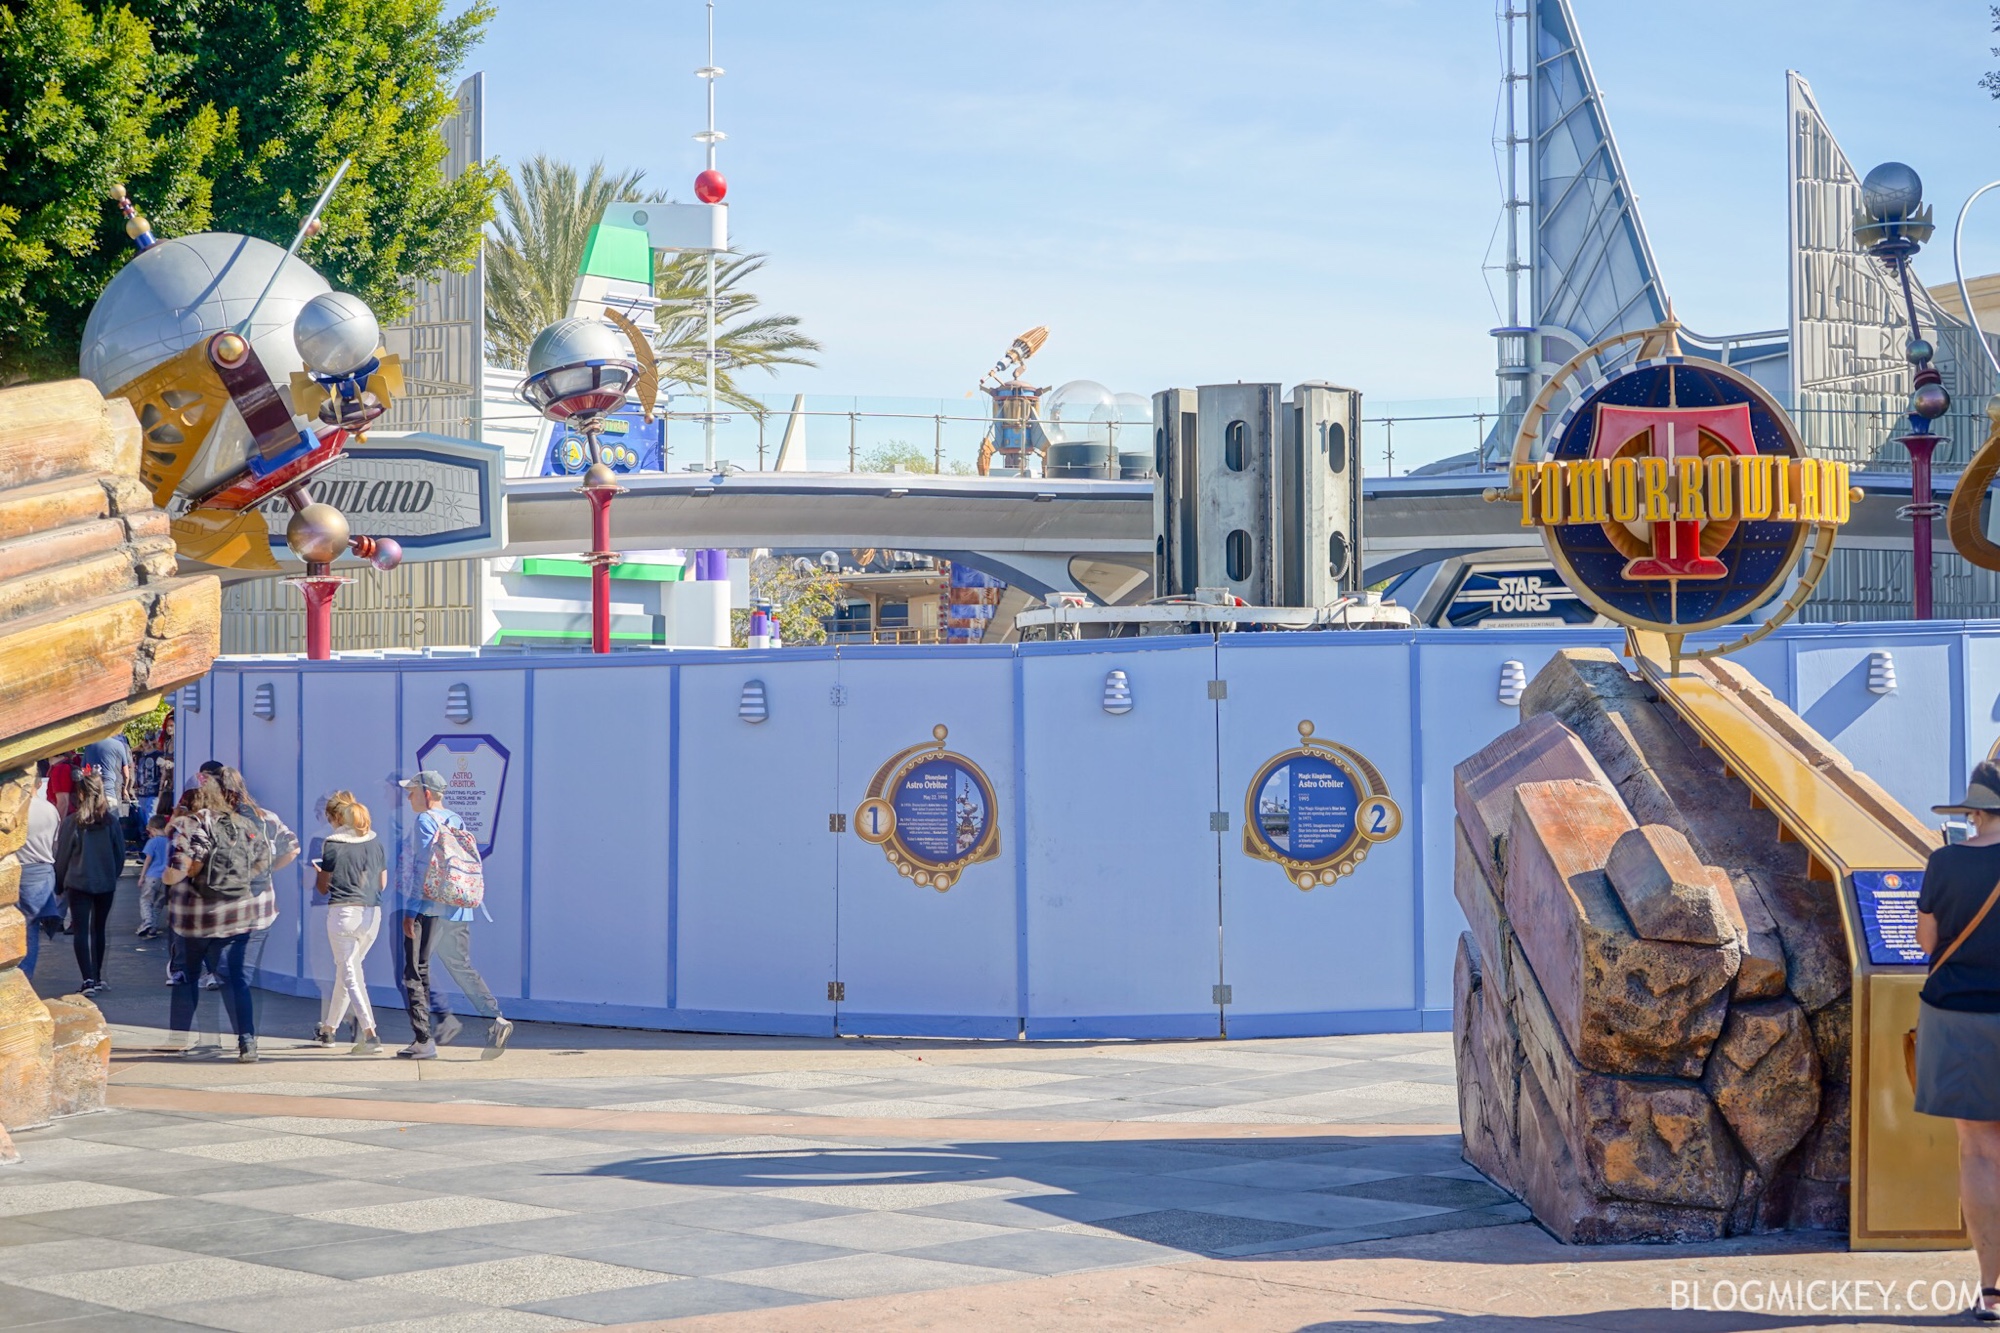 Astro Orbitor Disneyland Refurbishment